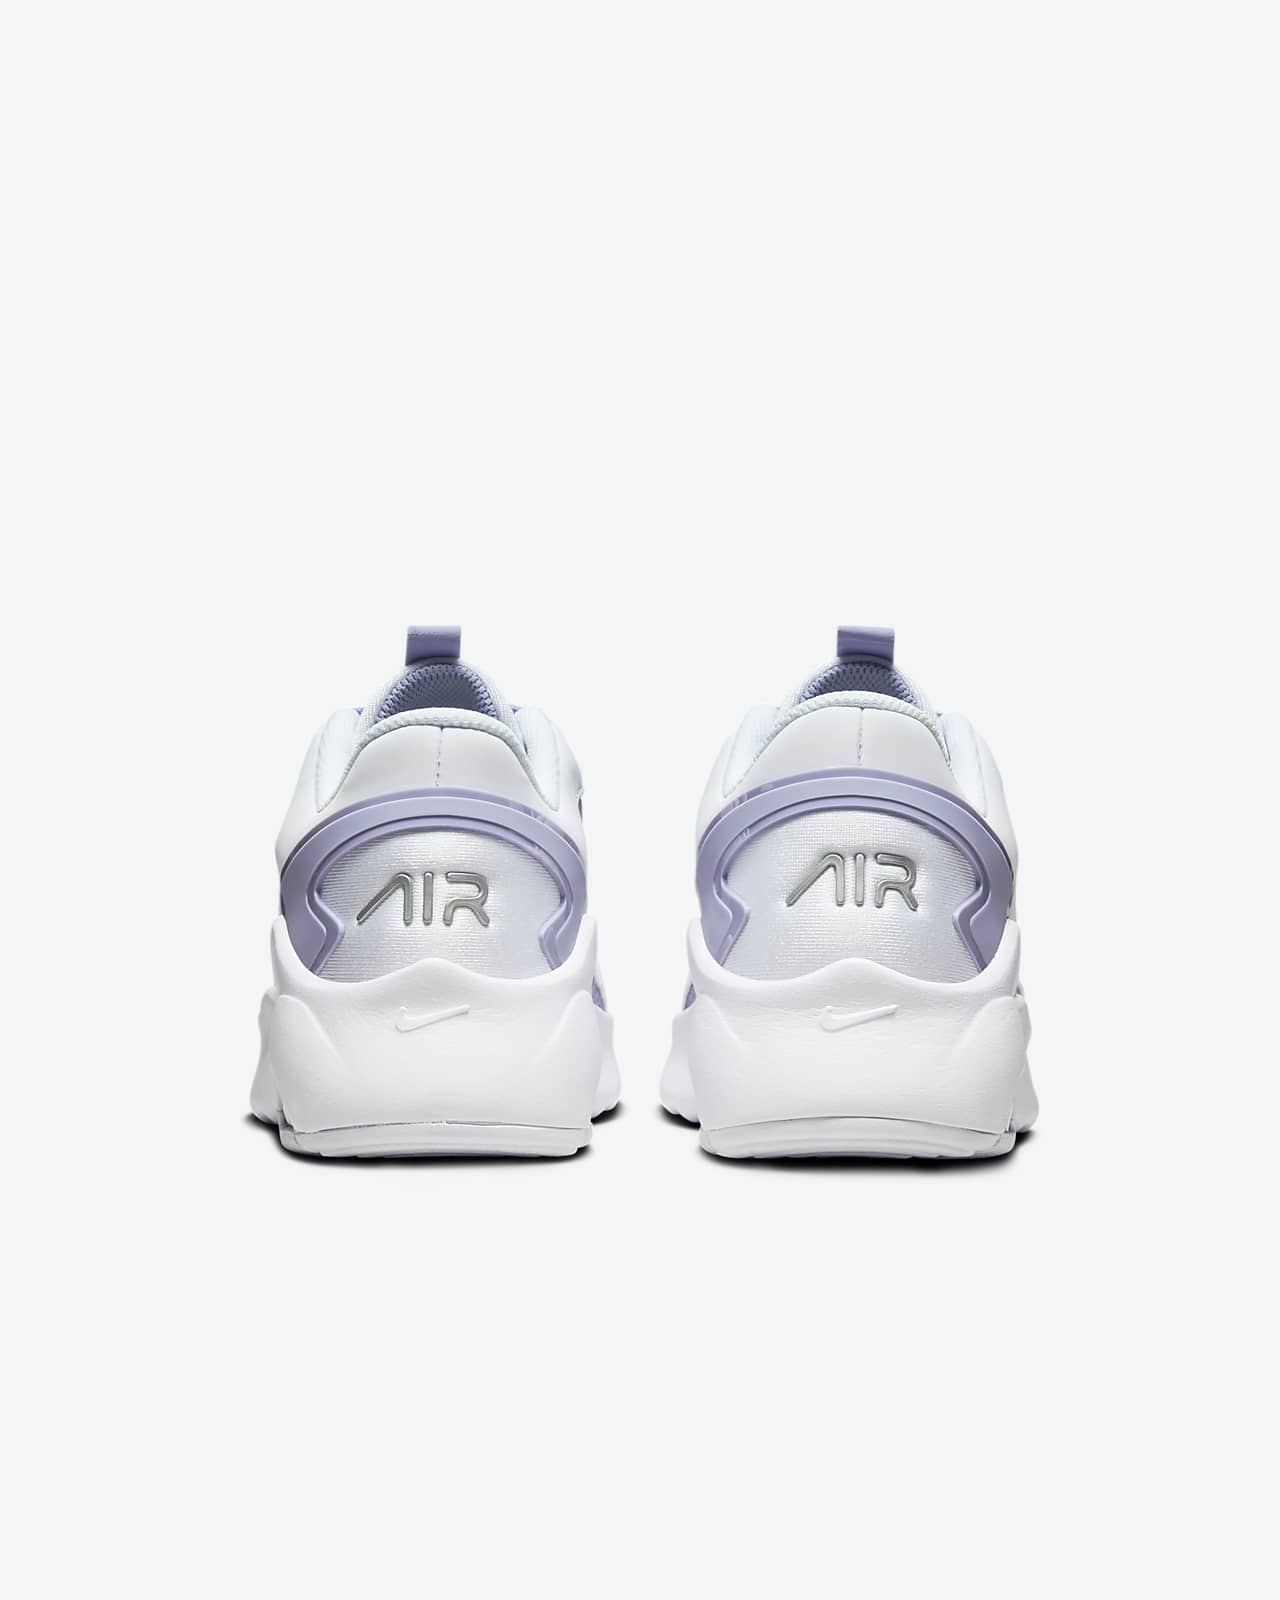 Nike Bolt Women\'s Shoes. Max Air